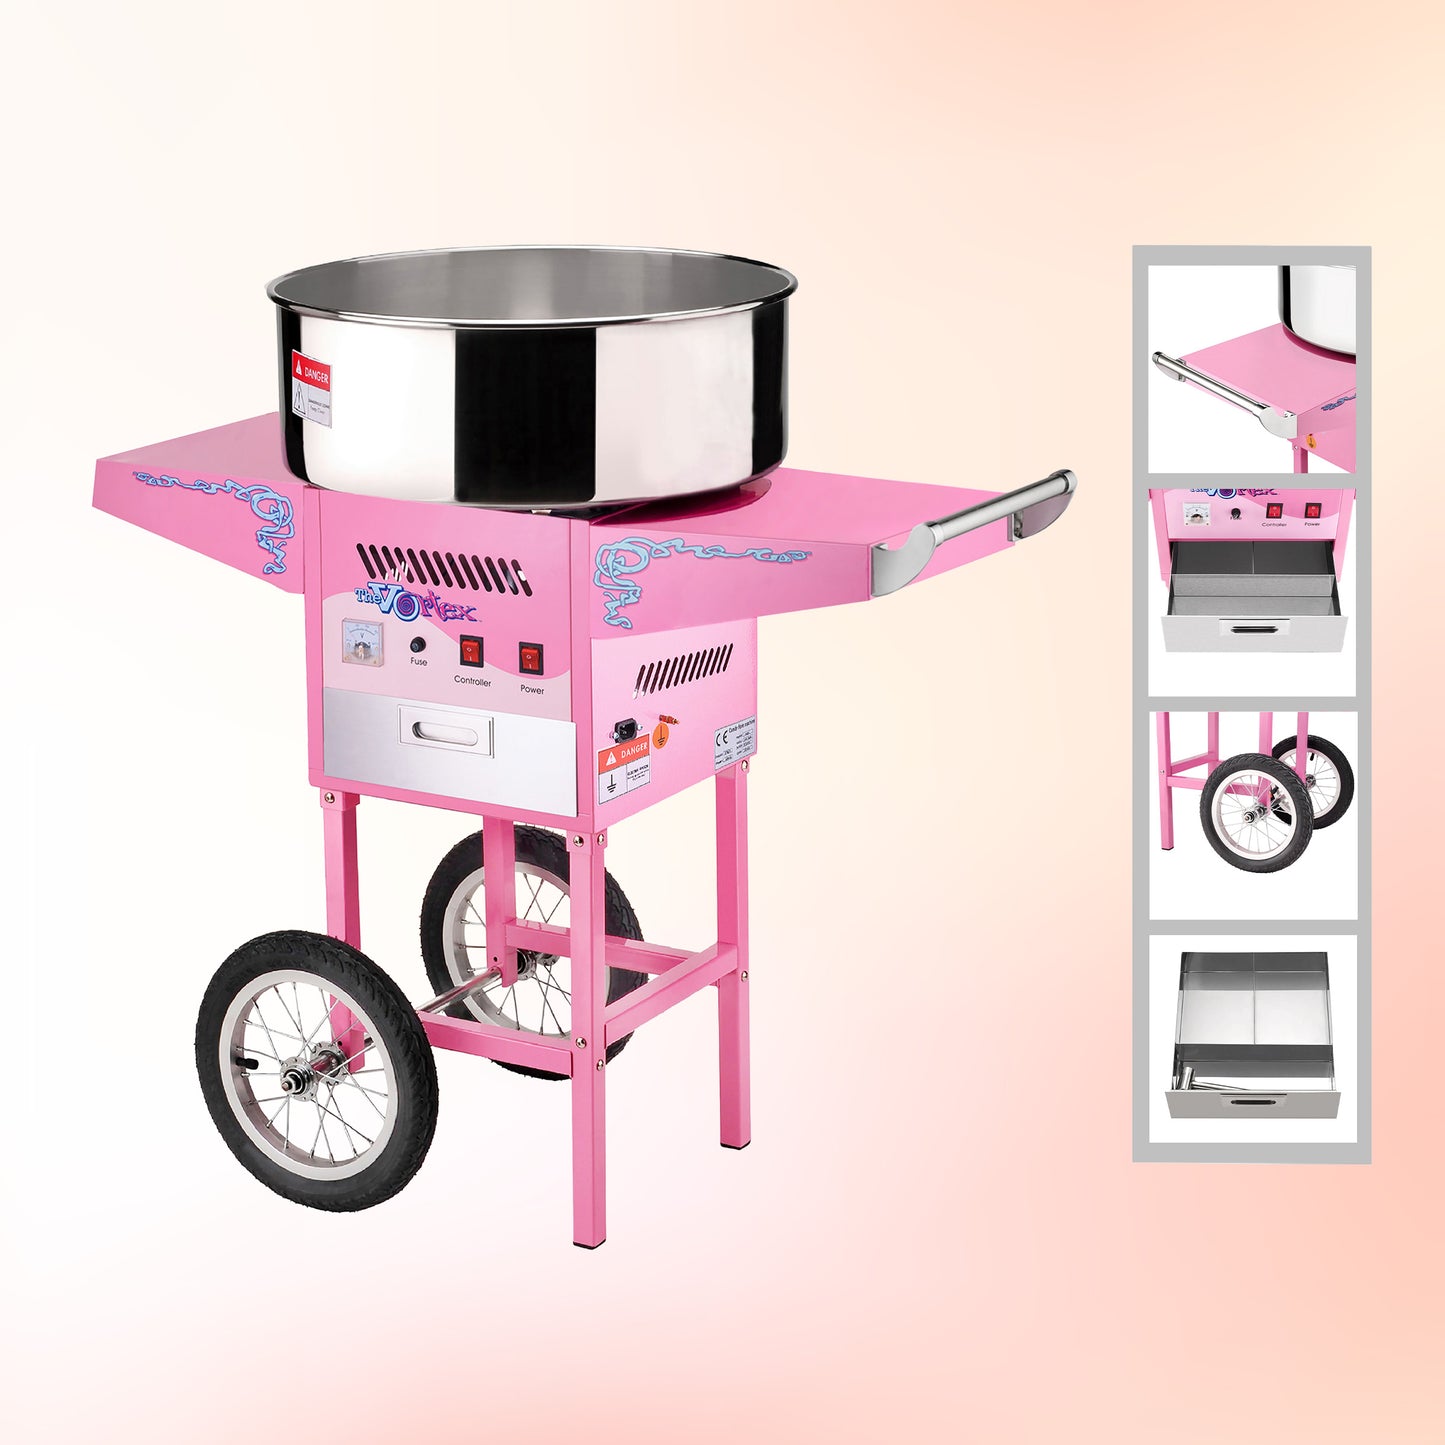 Vortex Cotton Candy Machine with Cart, Pink